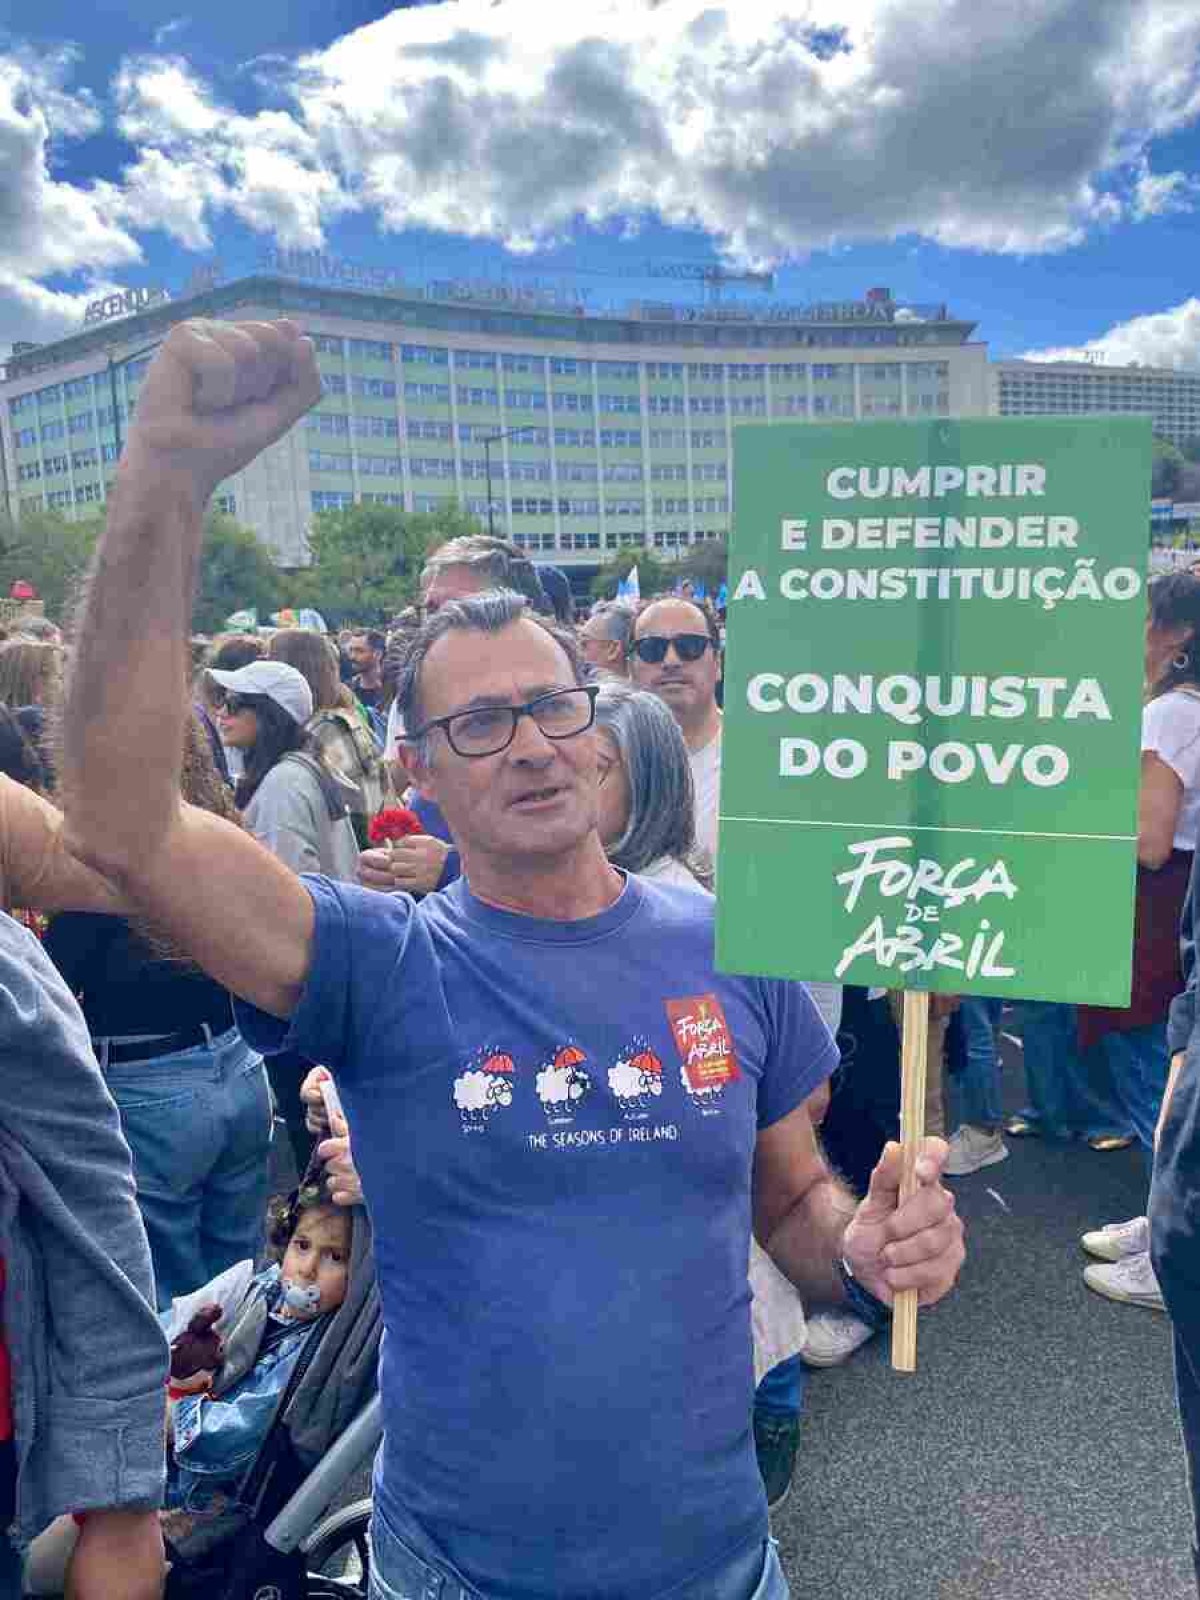 Punho cerrado, o aposentado Carlos Lopes, 63 anos, ressaltou a importância da luta pelas liberdades 